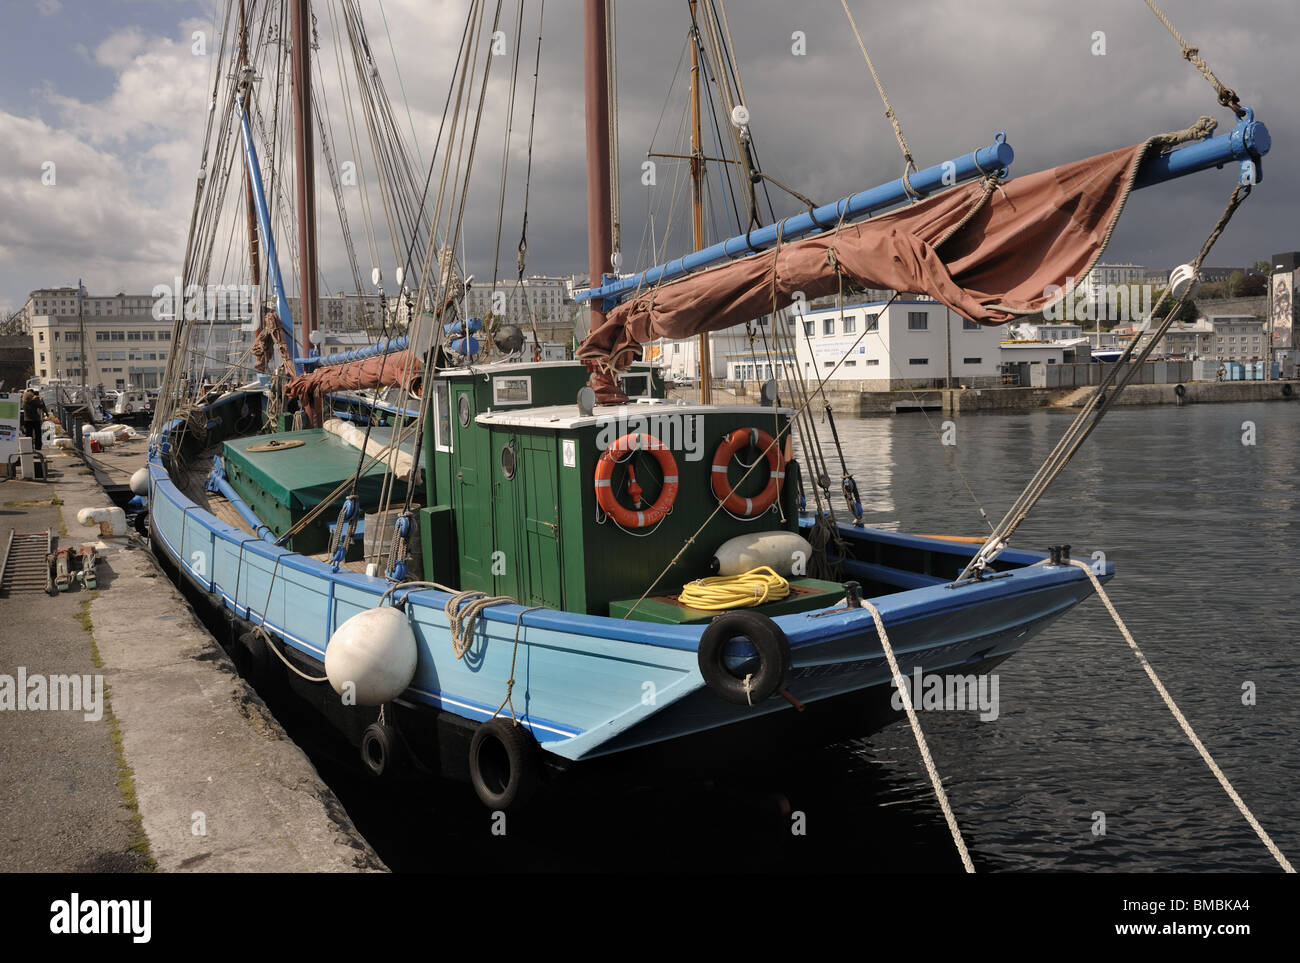 Historischen Boot vertäut im Hafen von Brest, Bretagne, Frankreich Stockfoto